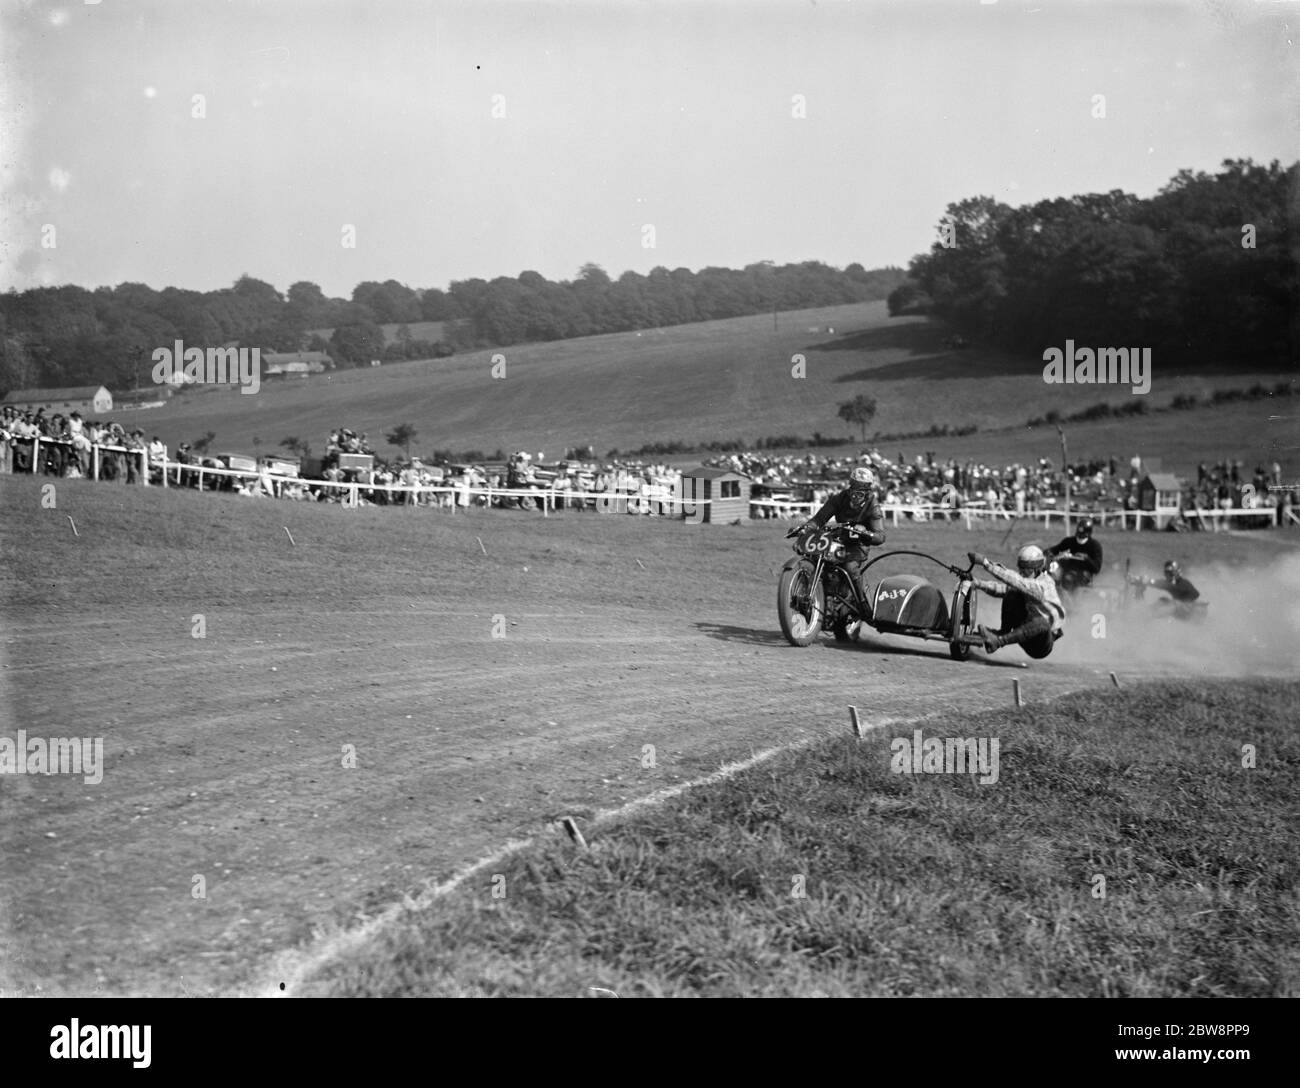 Courses de motocyclisme à Brands Hatch . Deux des motos de voiture latérale se bousculent pour se positionner sur un coin pendant la course . 1936 Banque D'Images